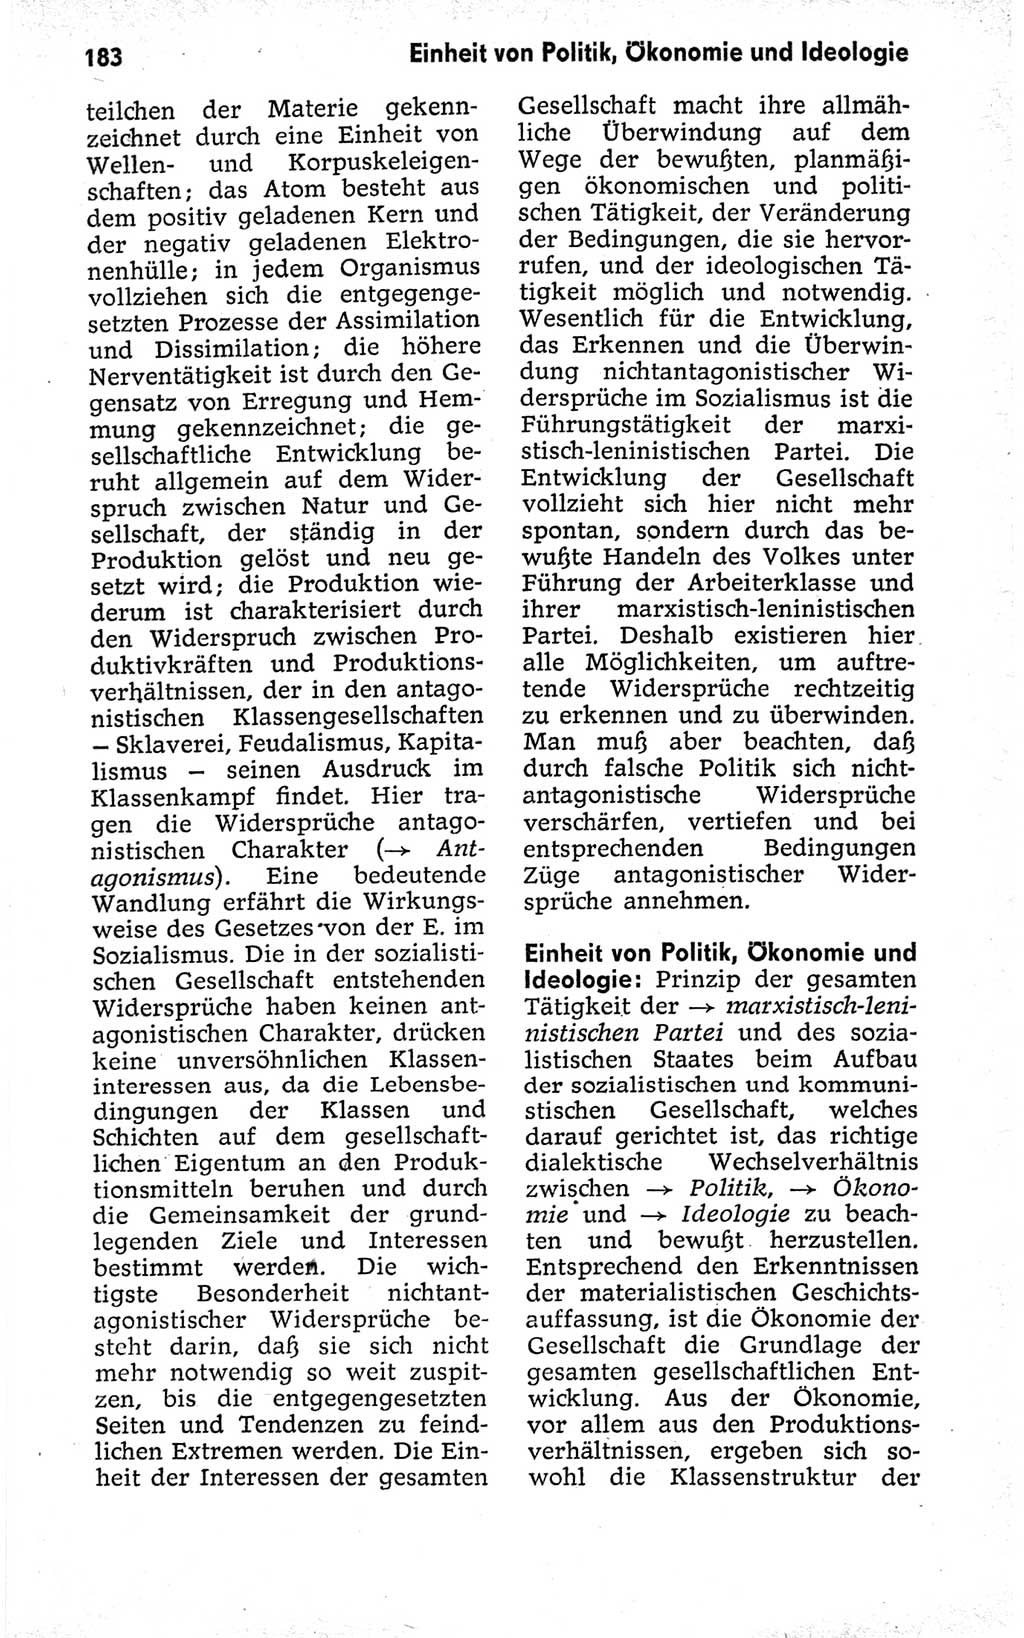 Kleines politisches Wörterbuch [Deutsche Demokratische Republik (DDR)] 1973, Seite 183 (Kl. pol. Wb. DDR 1973, S. 183)